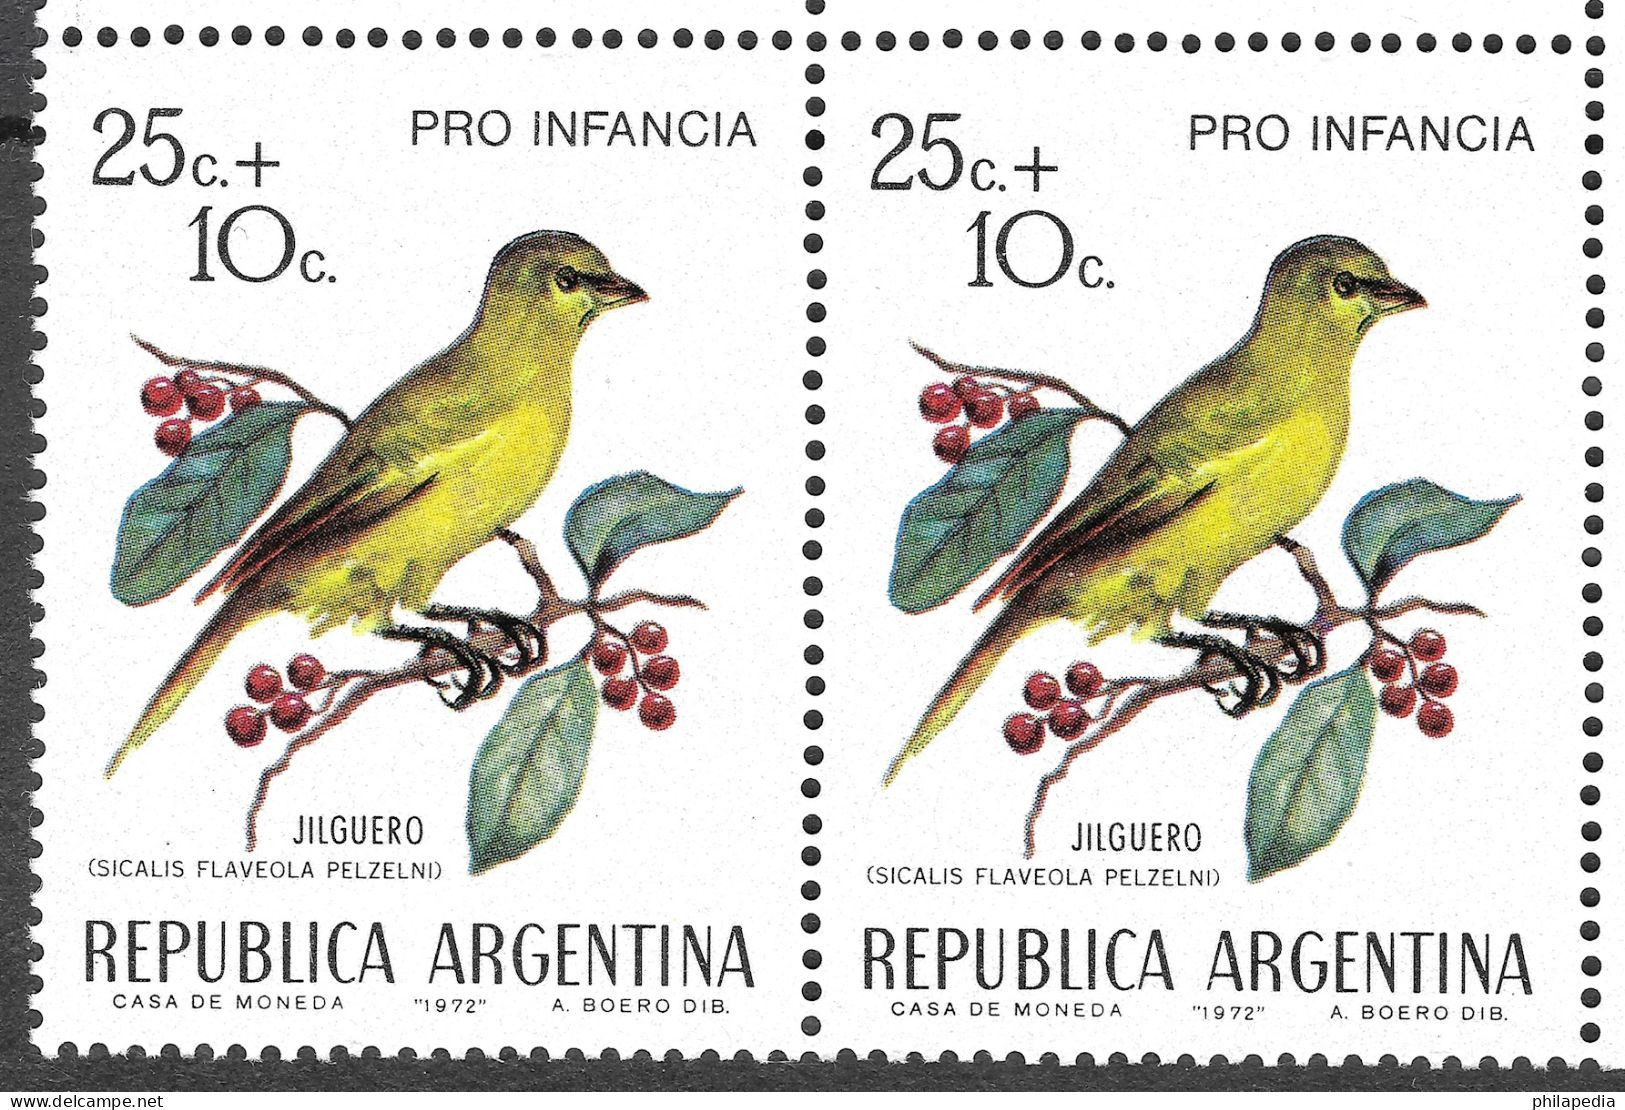 Argentine Football Oiseaux Passereaux Tyran Kamichi Merle Chardonneret Birds Finch Vögel Aves Chaja Uccelli ** 1972 50€ - Sperlingsvögel & Singvögel